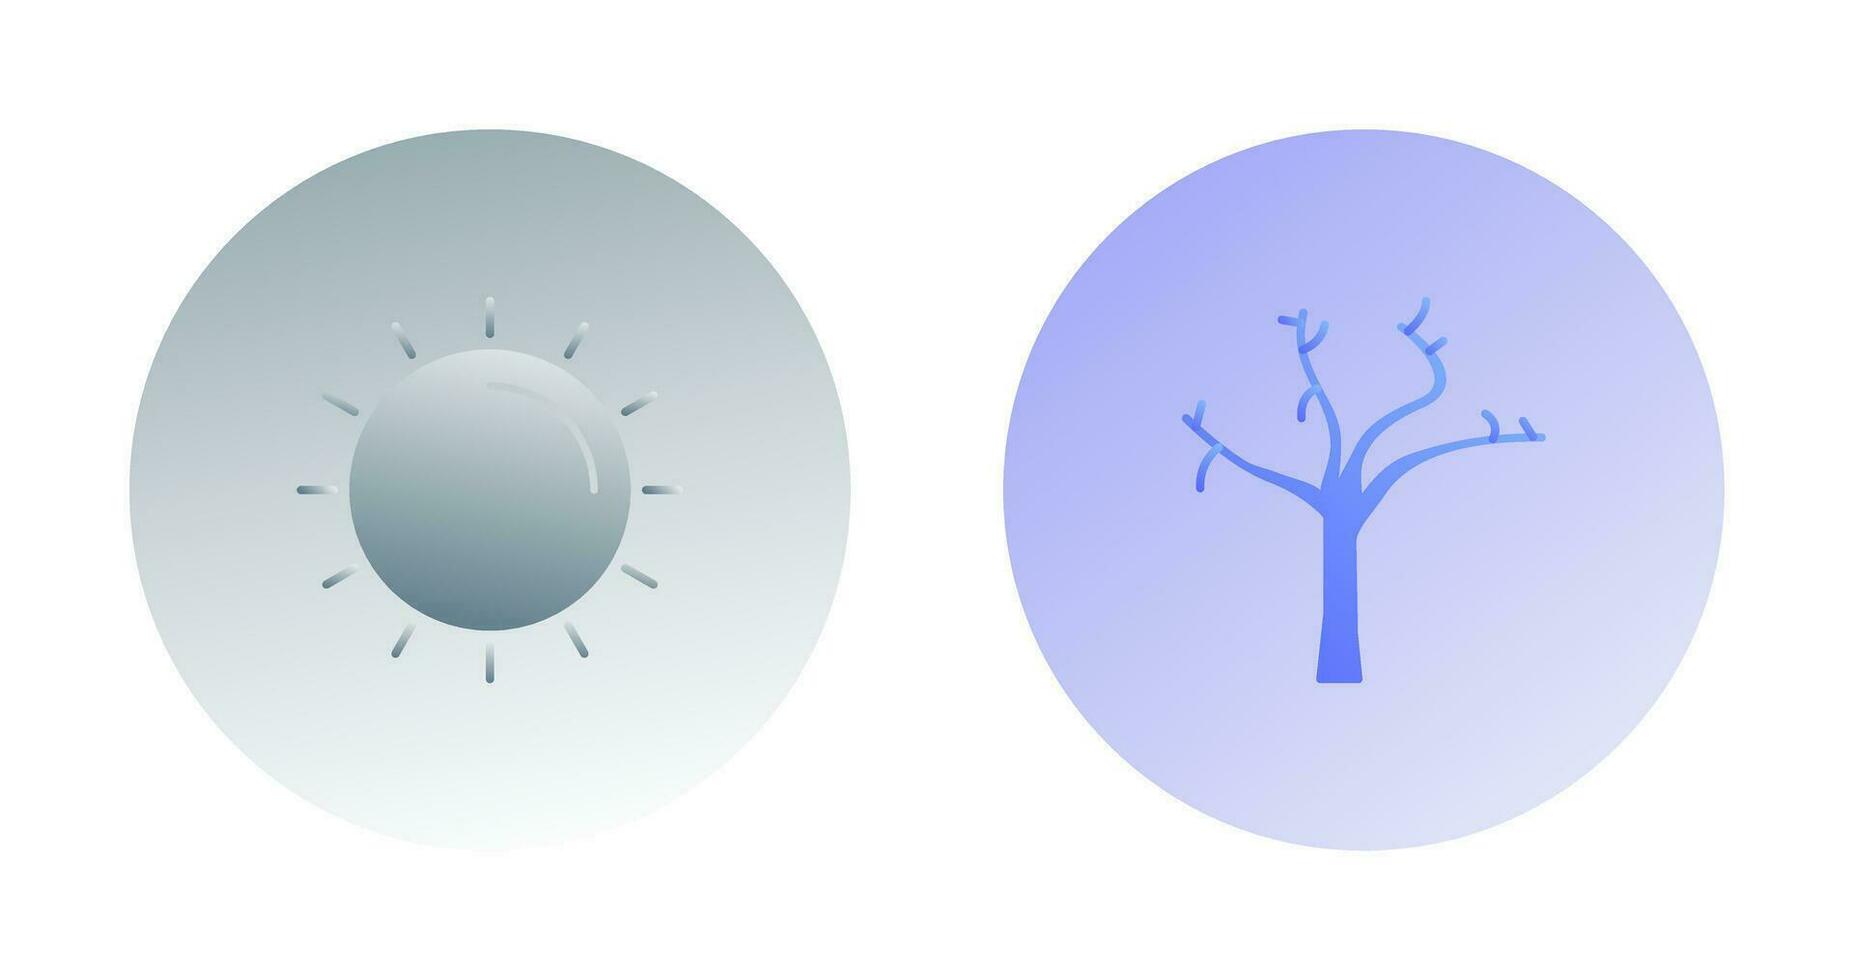 Sonne und Baum Symbol vektor